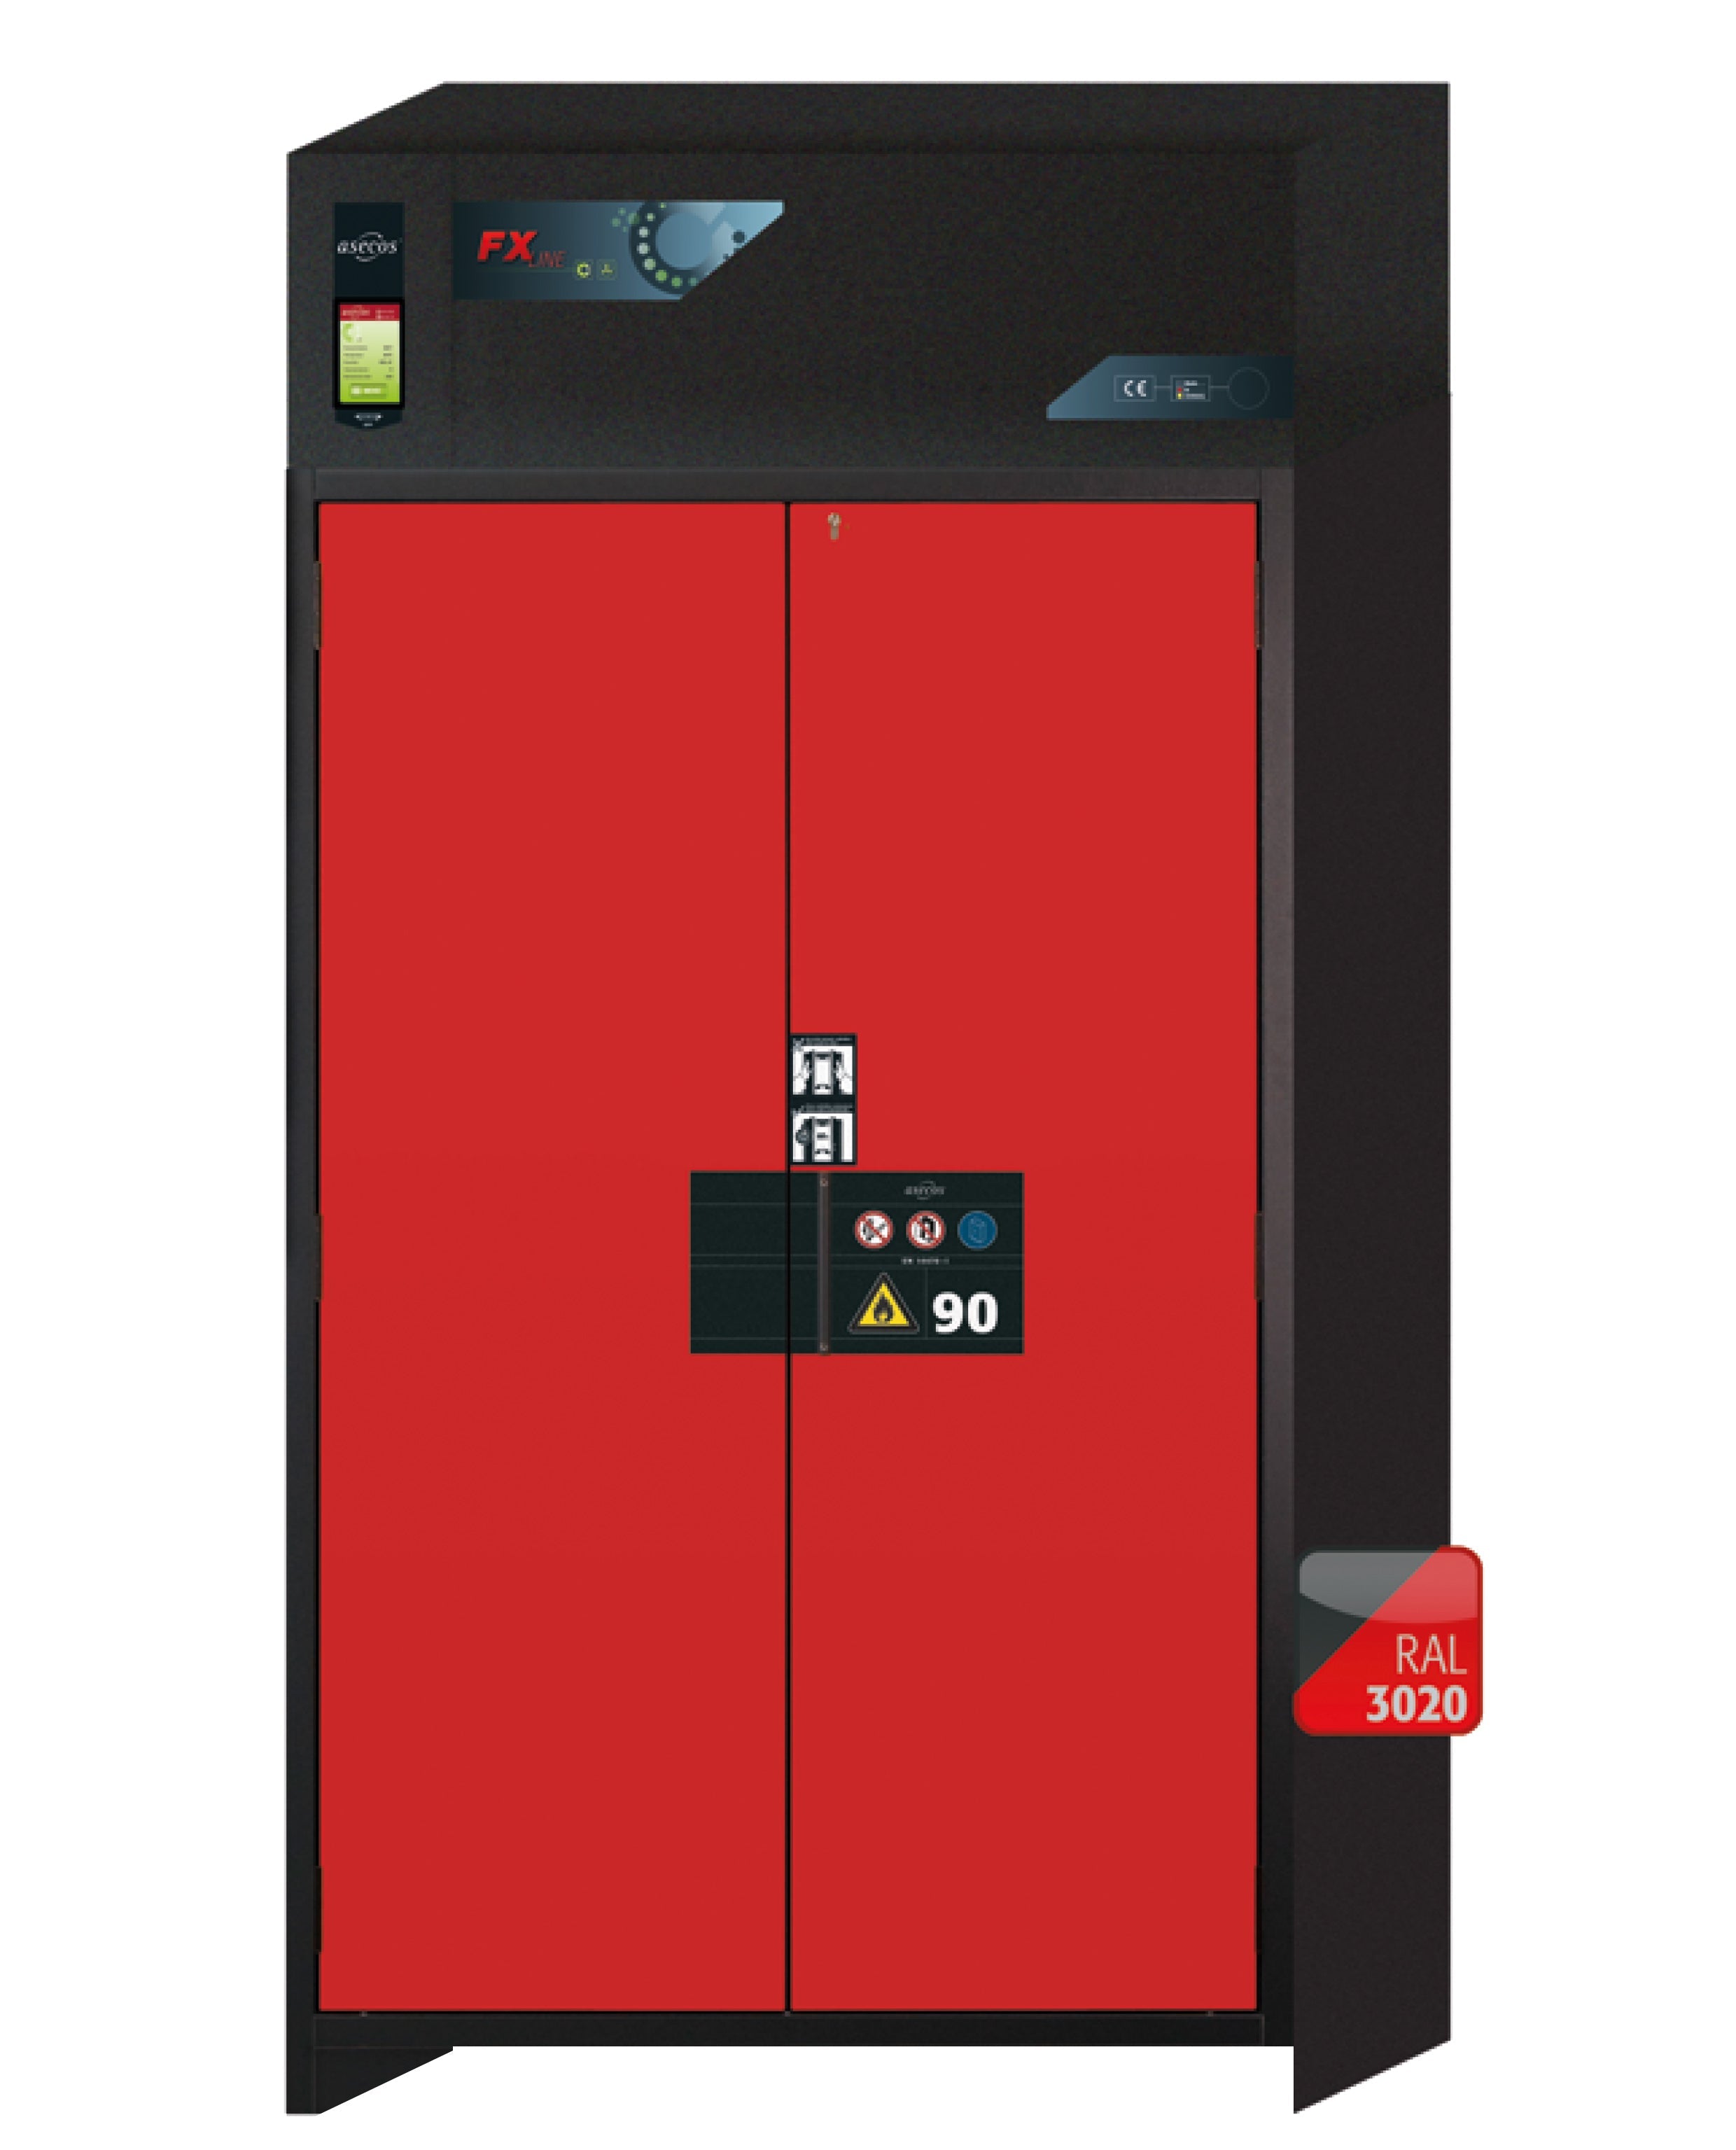 Armoire de filtration d'air de recirculation de type 90 FX-PEGASUS-90 modèle FX90.229.120.WDAC en rouge signalisation RAL 3020 avec 2x pieds de plateau standard (polypropylène)